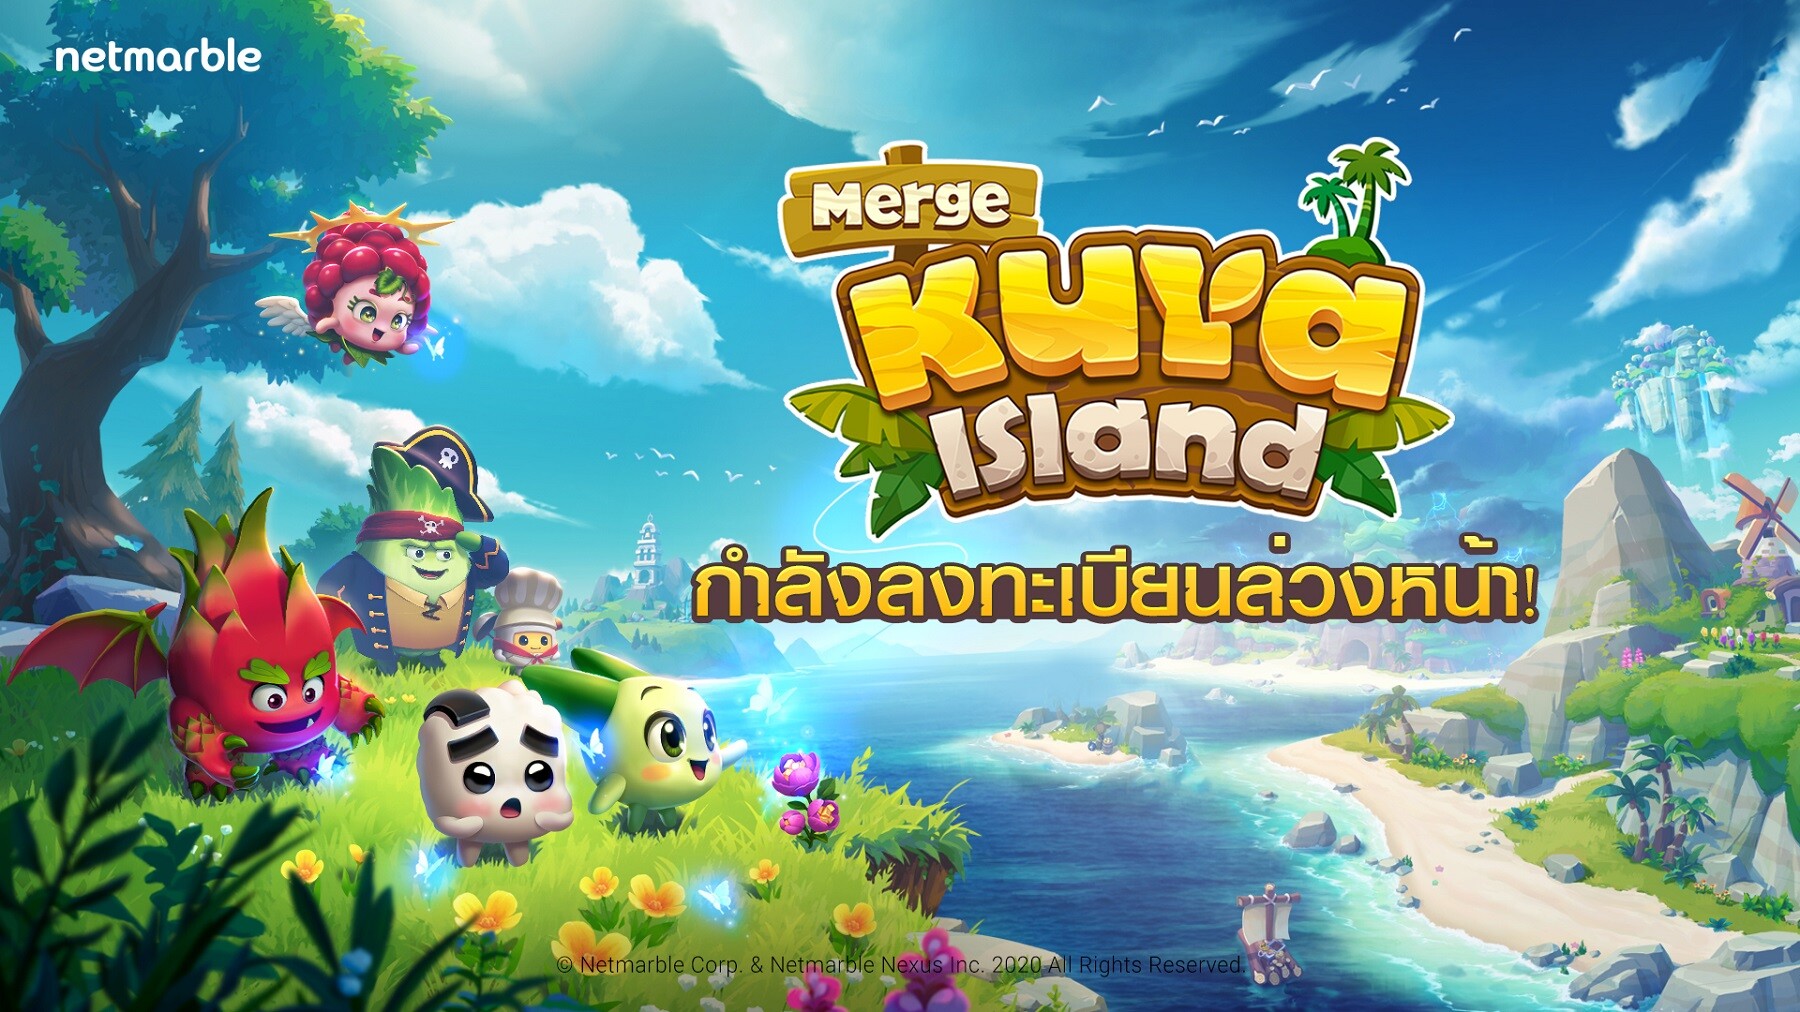 สร้างสรรค์เกาะส่วนตัวด้วยมือคุณ! ผ่านเกมมือถือแนว Casual สุดคิวท์ ใน "Merge Kuya Island" สามารถลงทะเบียนล่วงหน้าได้บน Google Play, App Store, และเว็บไซต์ทางการได้แล้ว!